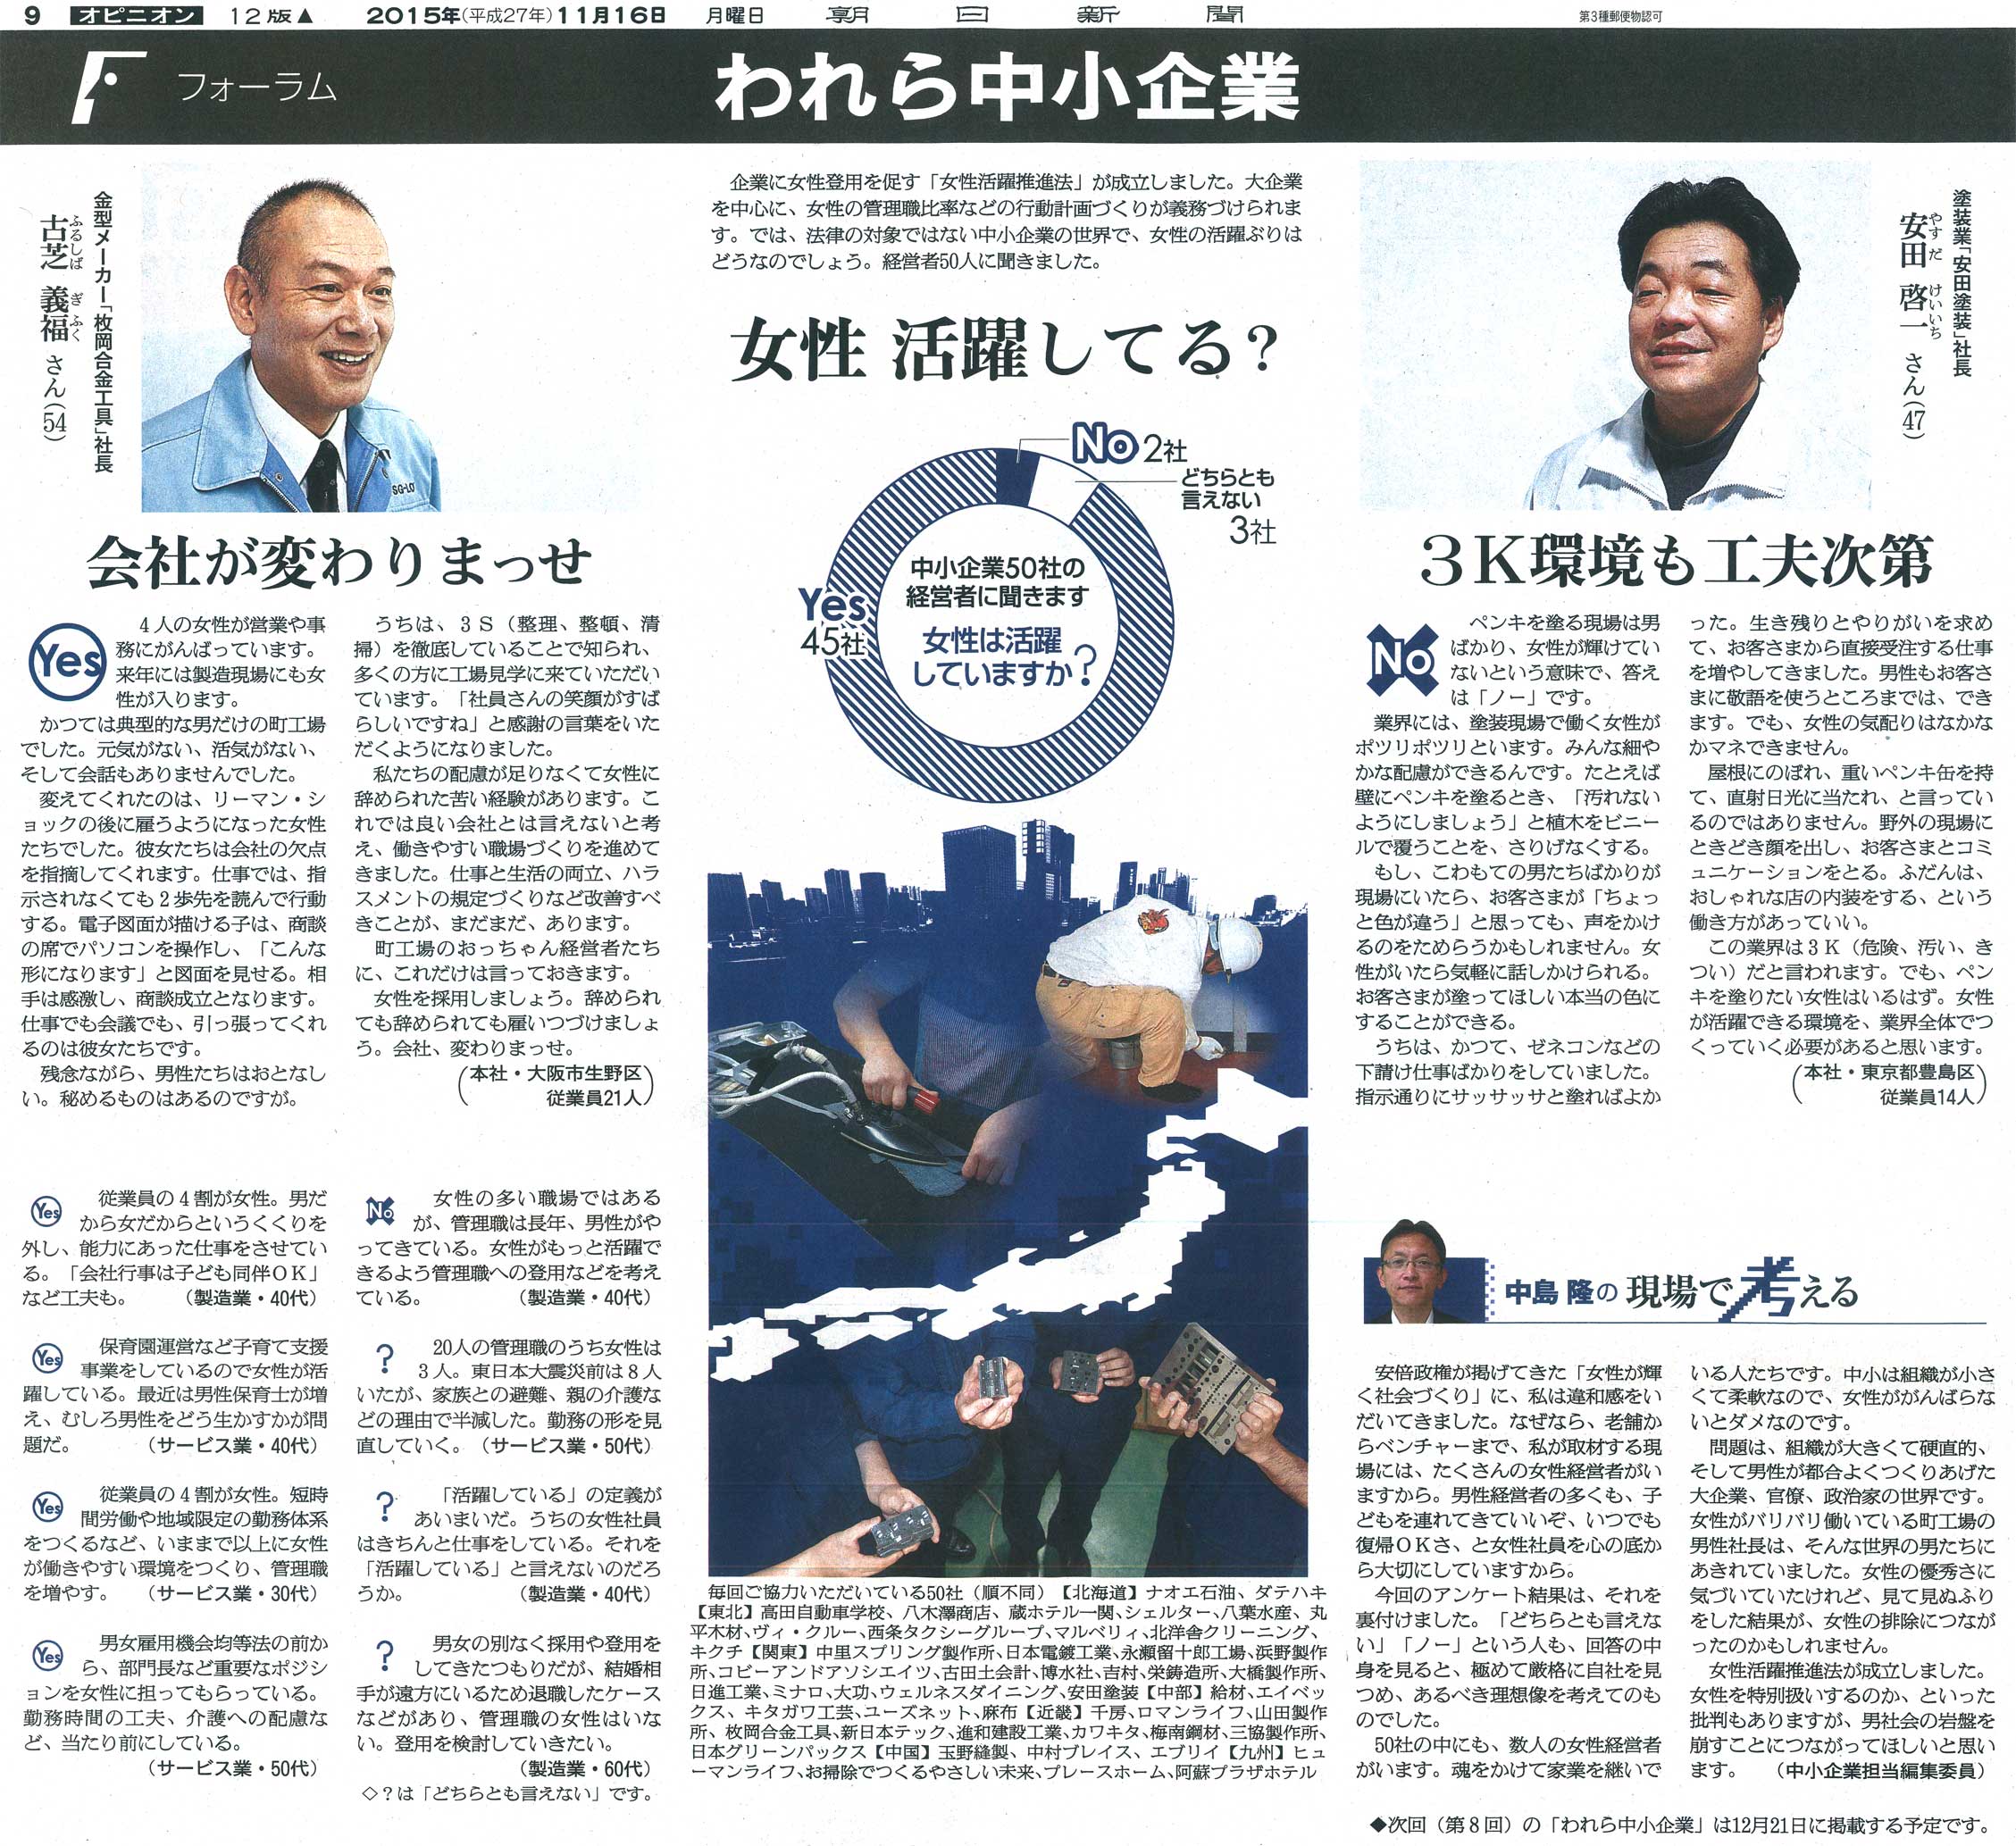 朝日新聞 フォーラム『われら中小企業』 女性 活躍してる？